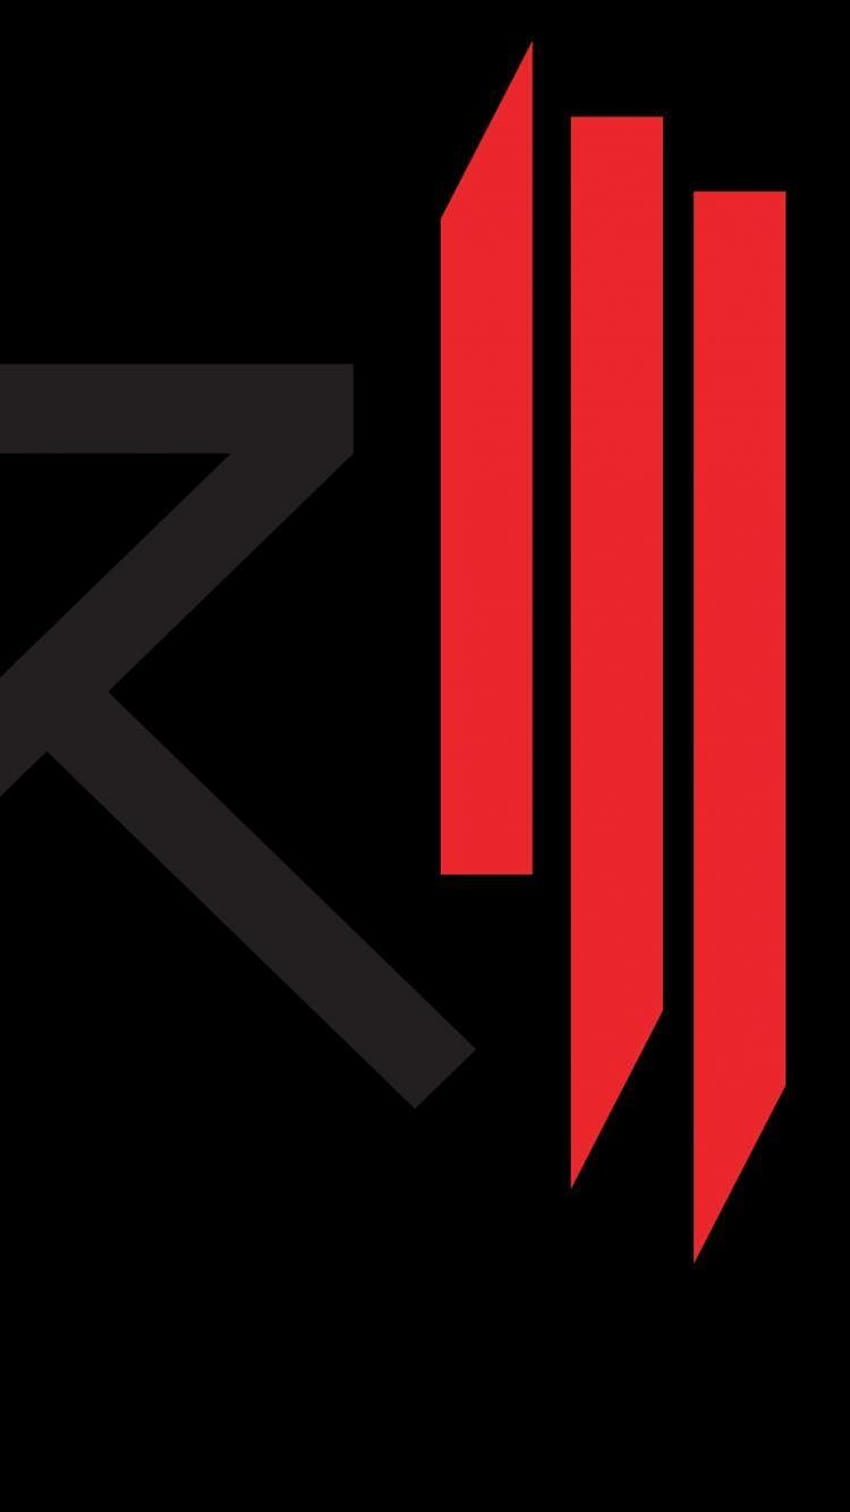 Skrillex logo group HD wallpapers | Pxfuel